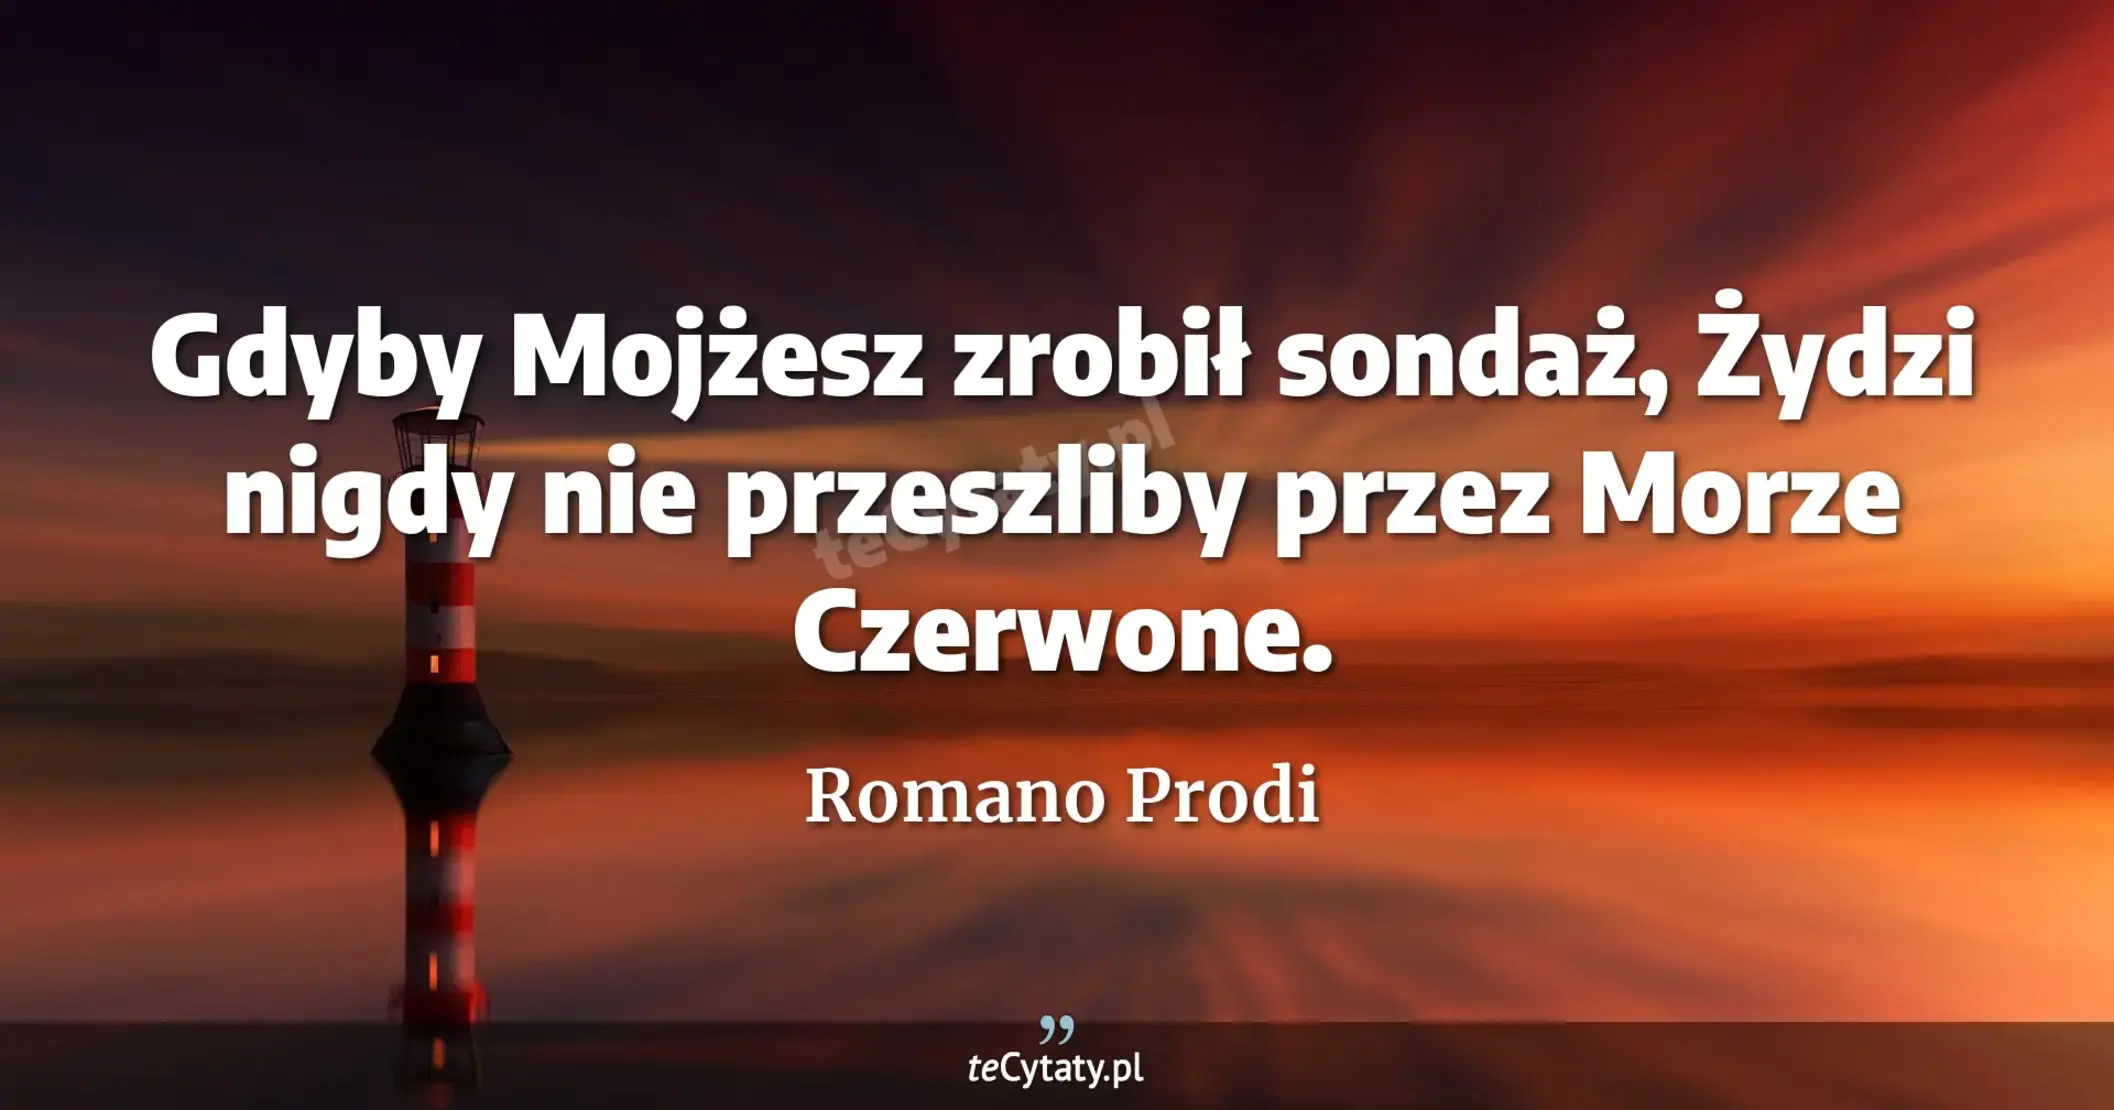 Gdyby Mojżesz zrobił sondaż, Żydzi nigdy nie przeszliby przez Morze Czerwone. - Romano Prodi